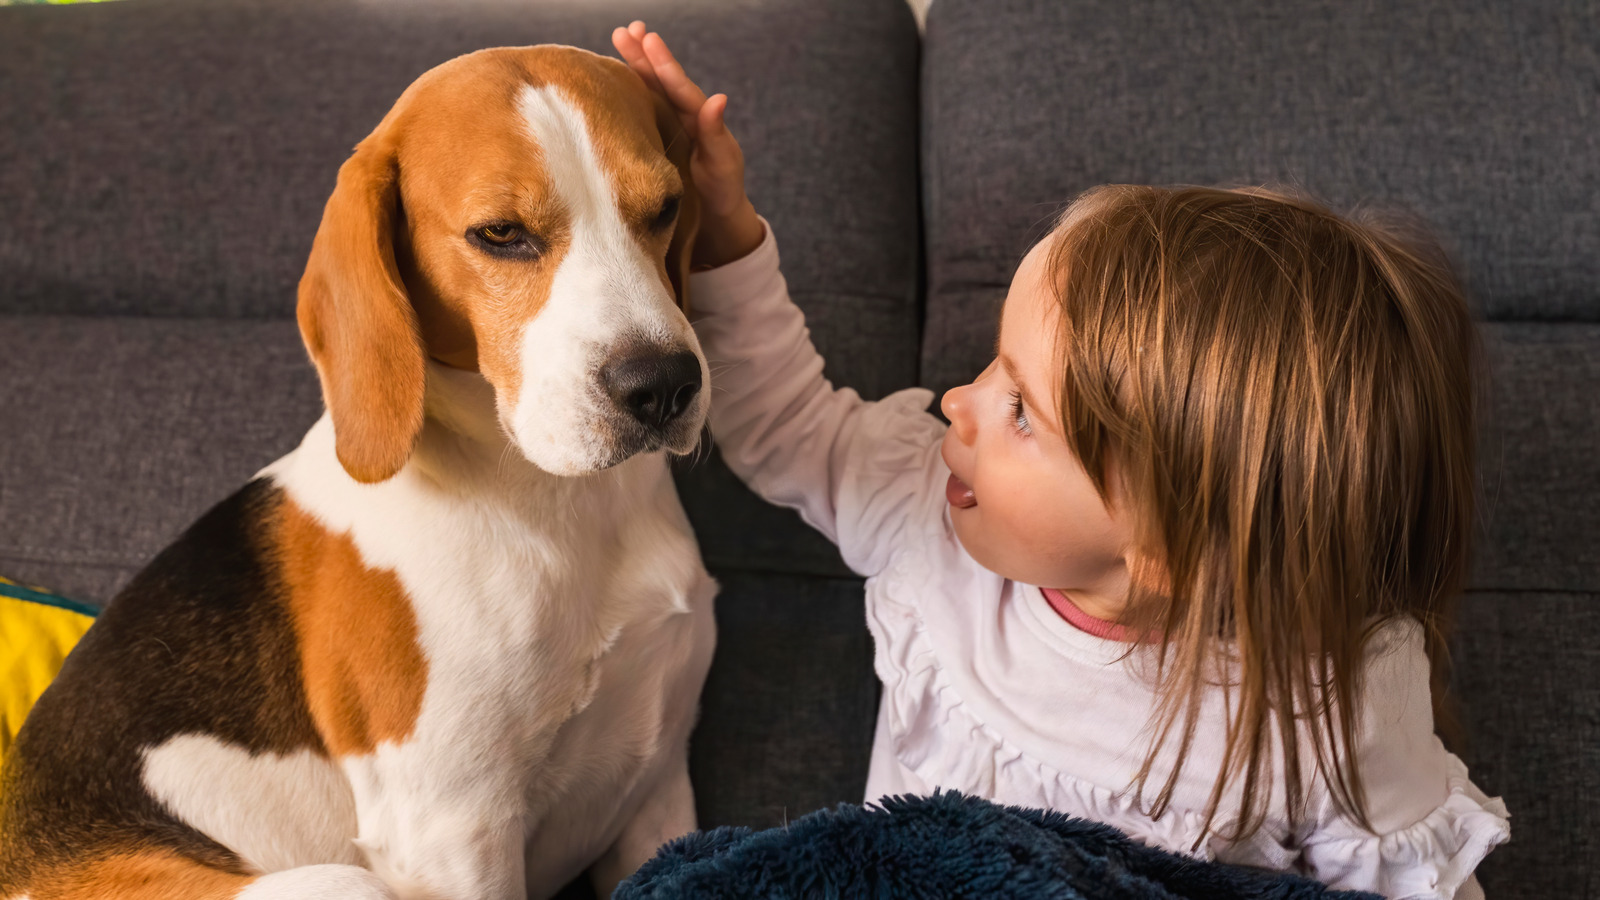 Bruine beagle hond zit met klein meisje kind met bruin haar op de zetel, kind aait hem op zijn kop